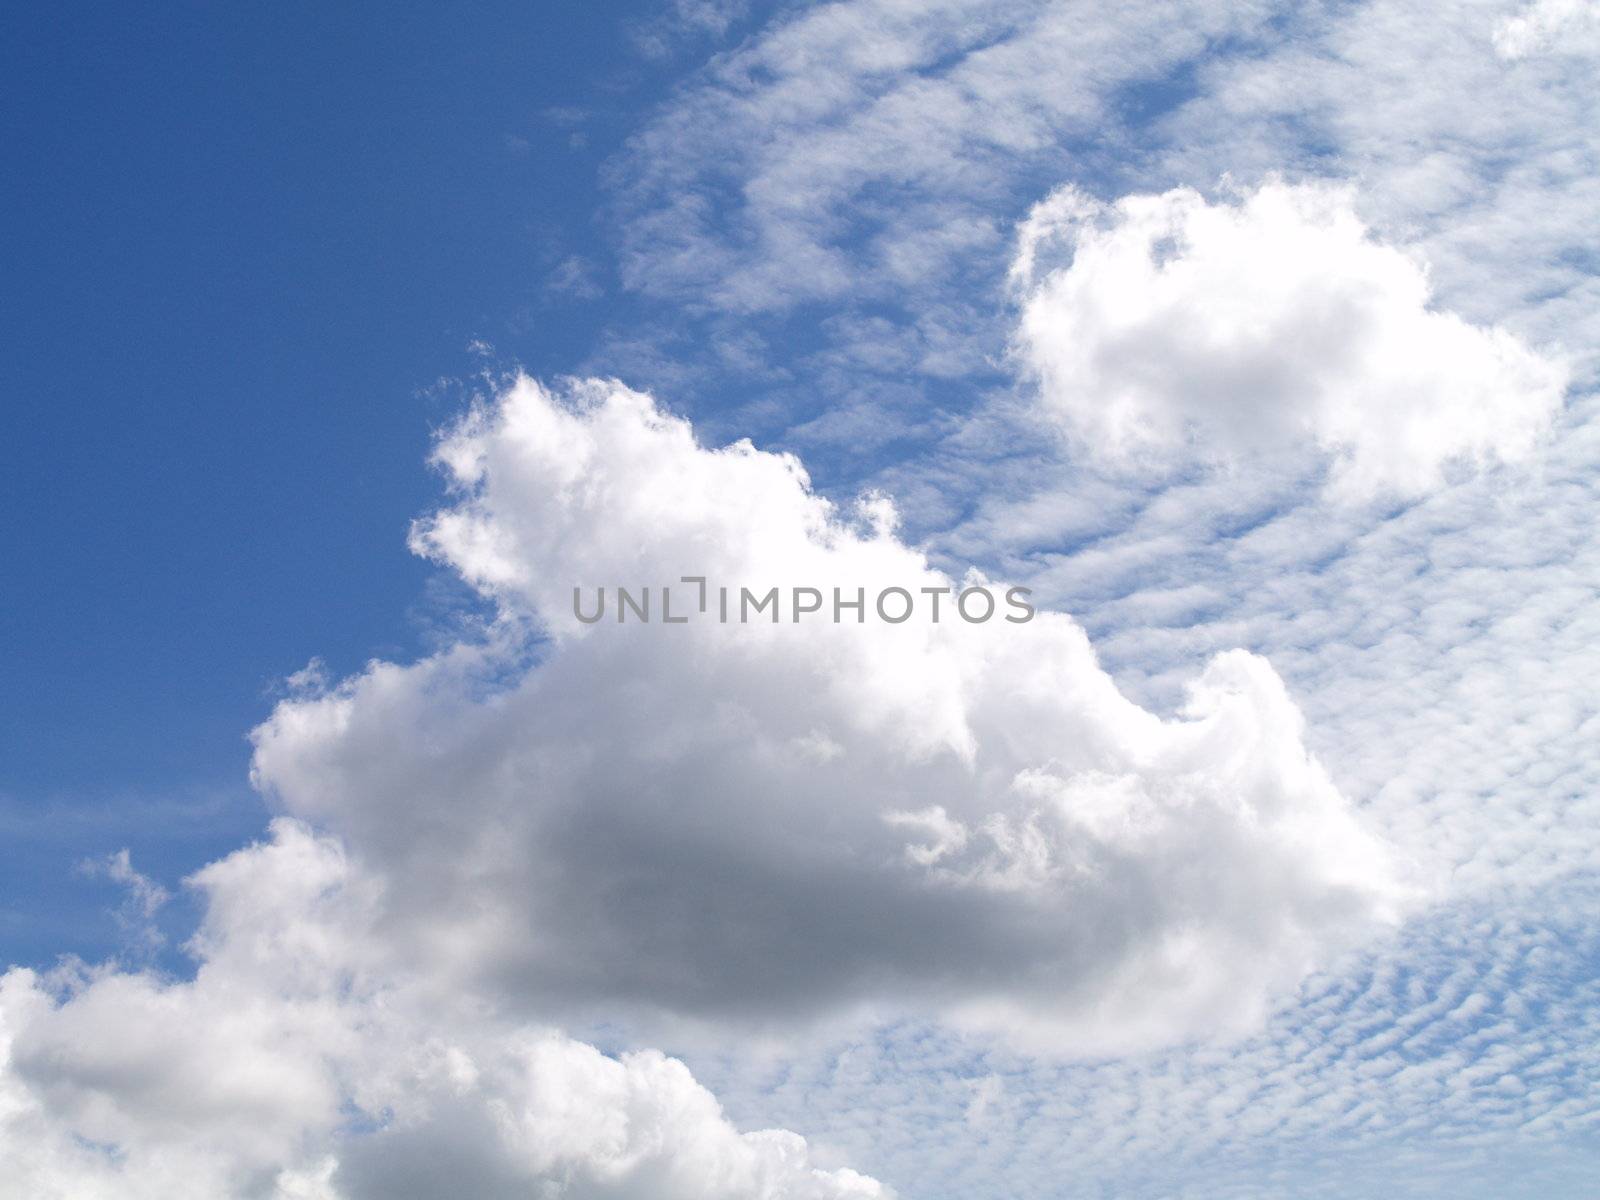 clouds by viviolsen